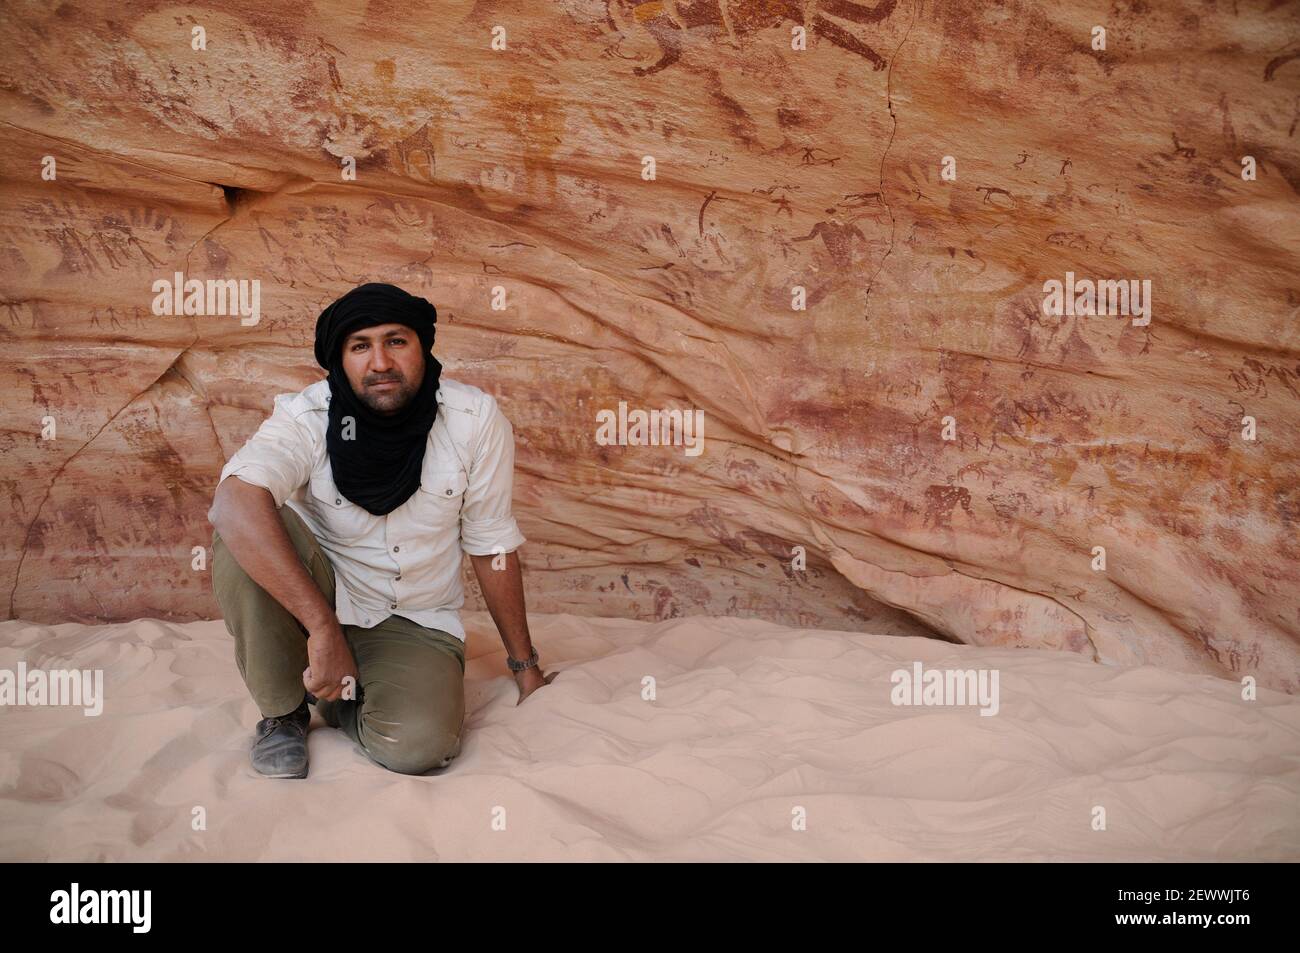 un esploratore al sito di arte rupestre e dipinti neolitici alla Grotta di Foggini-Mestikawi a Wadi Sura, Gilf Kebir, deserto occidentale in Egitto. Foto Stock